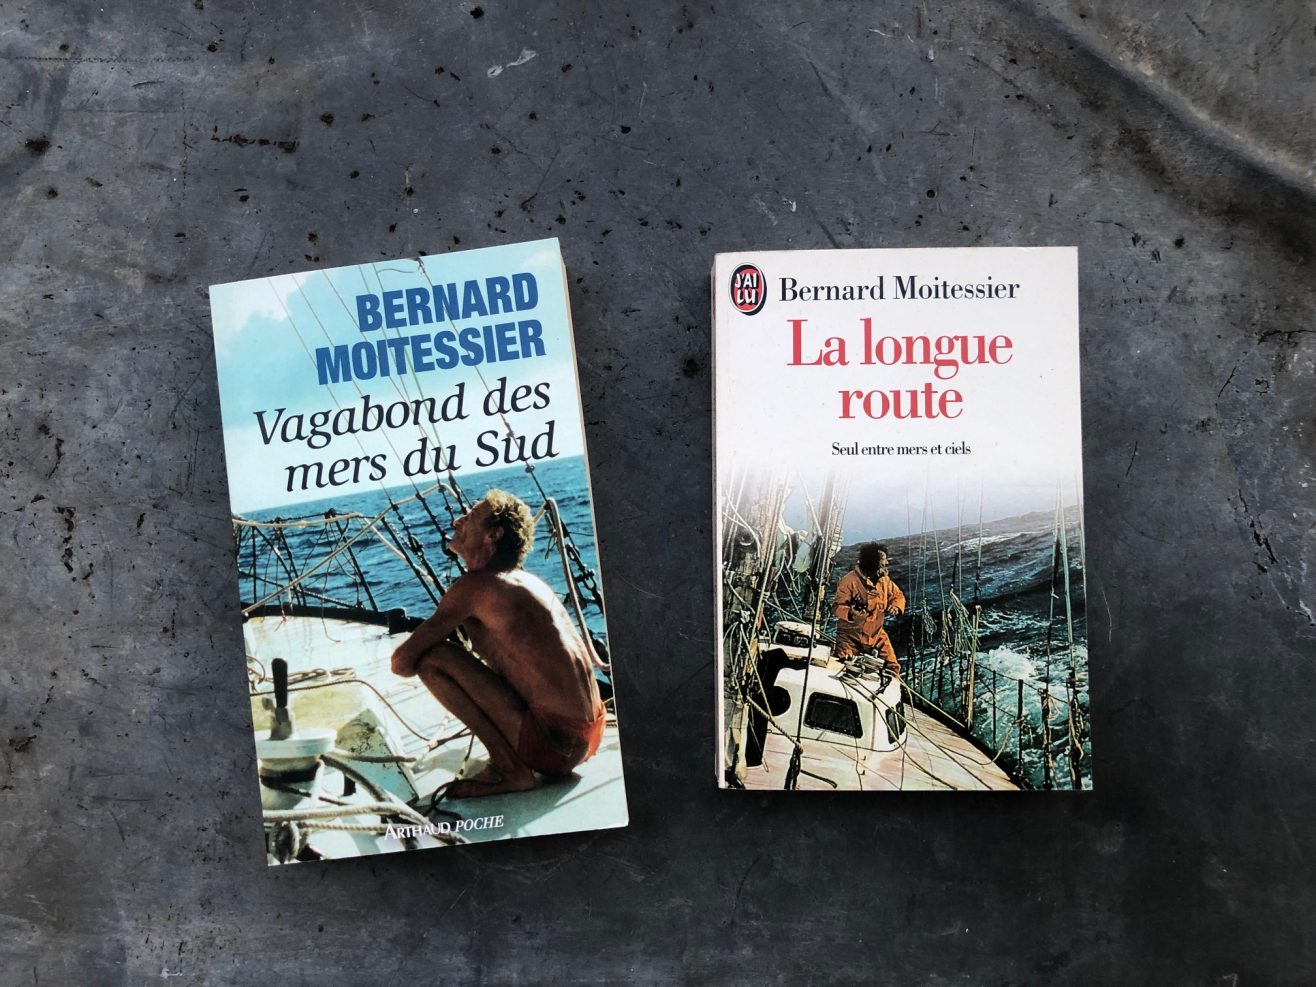 Deux des meilleurs livres sur le voyage signés par Bernard Moitessier